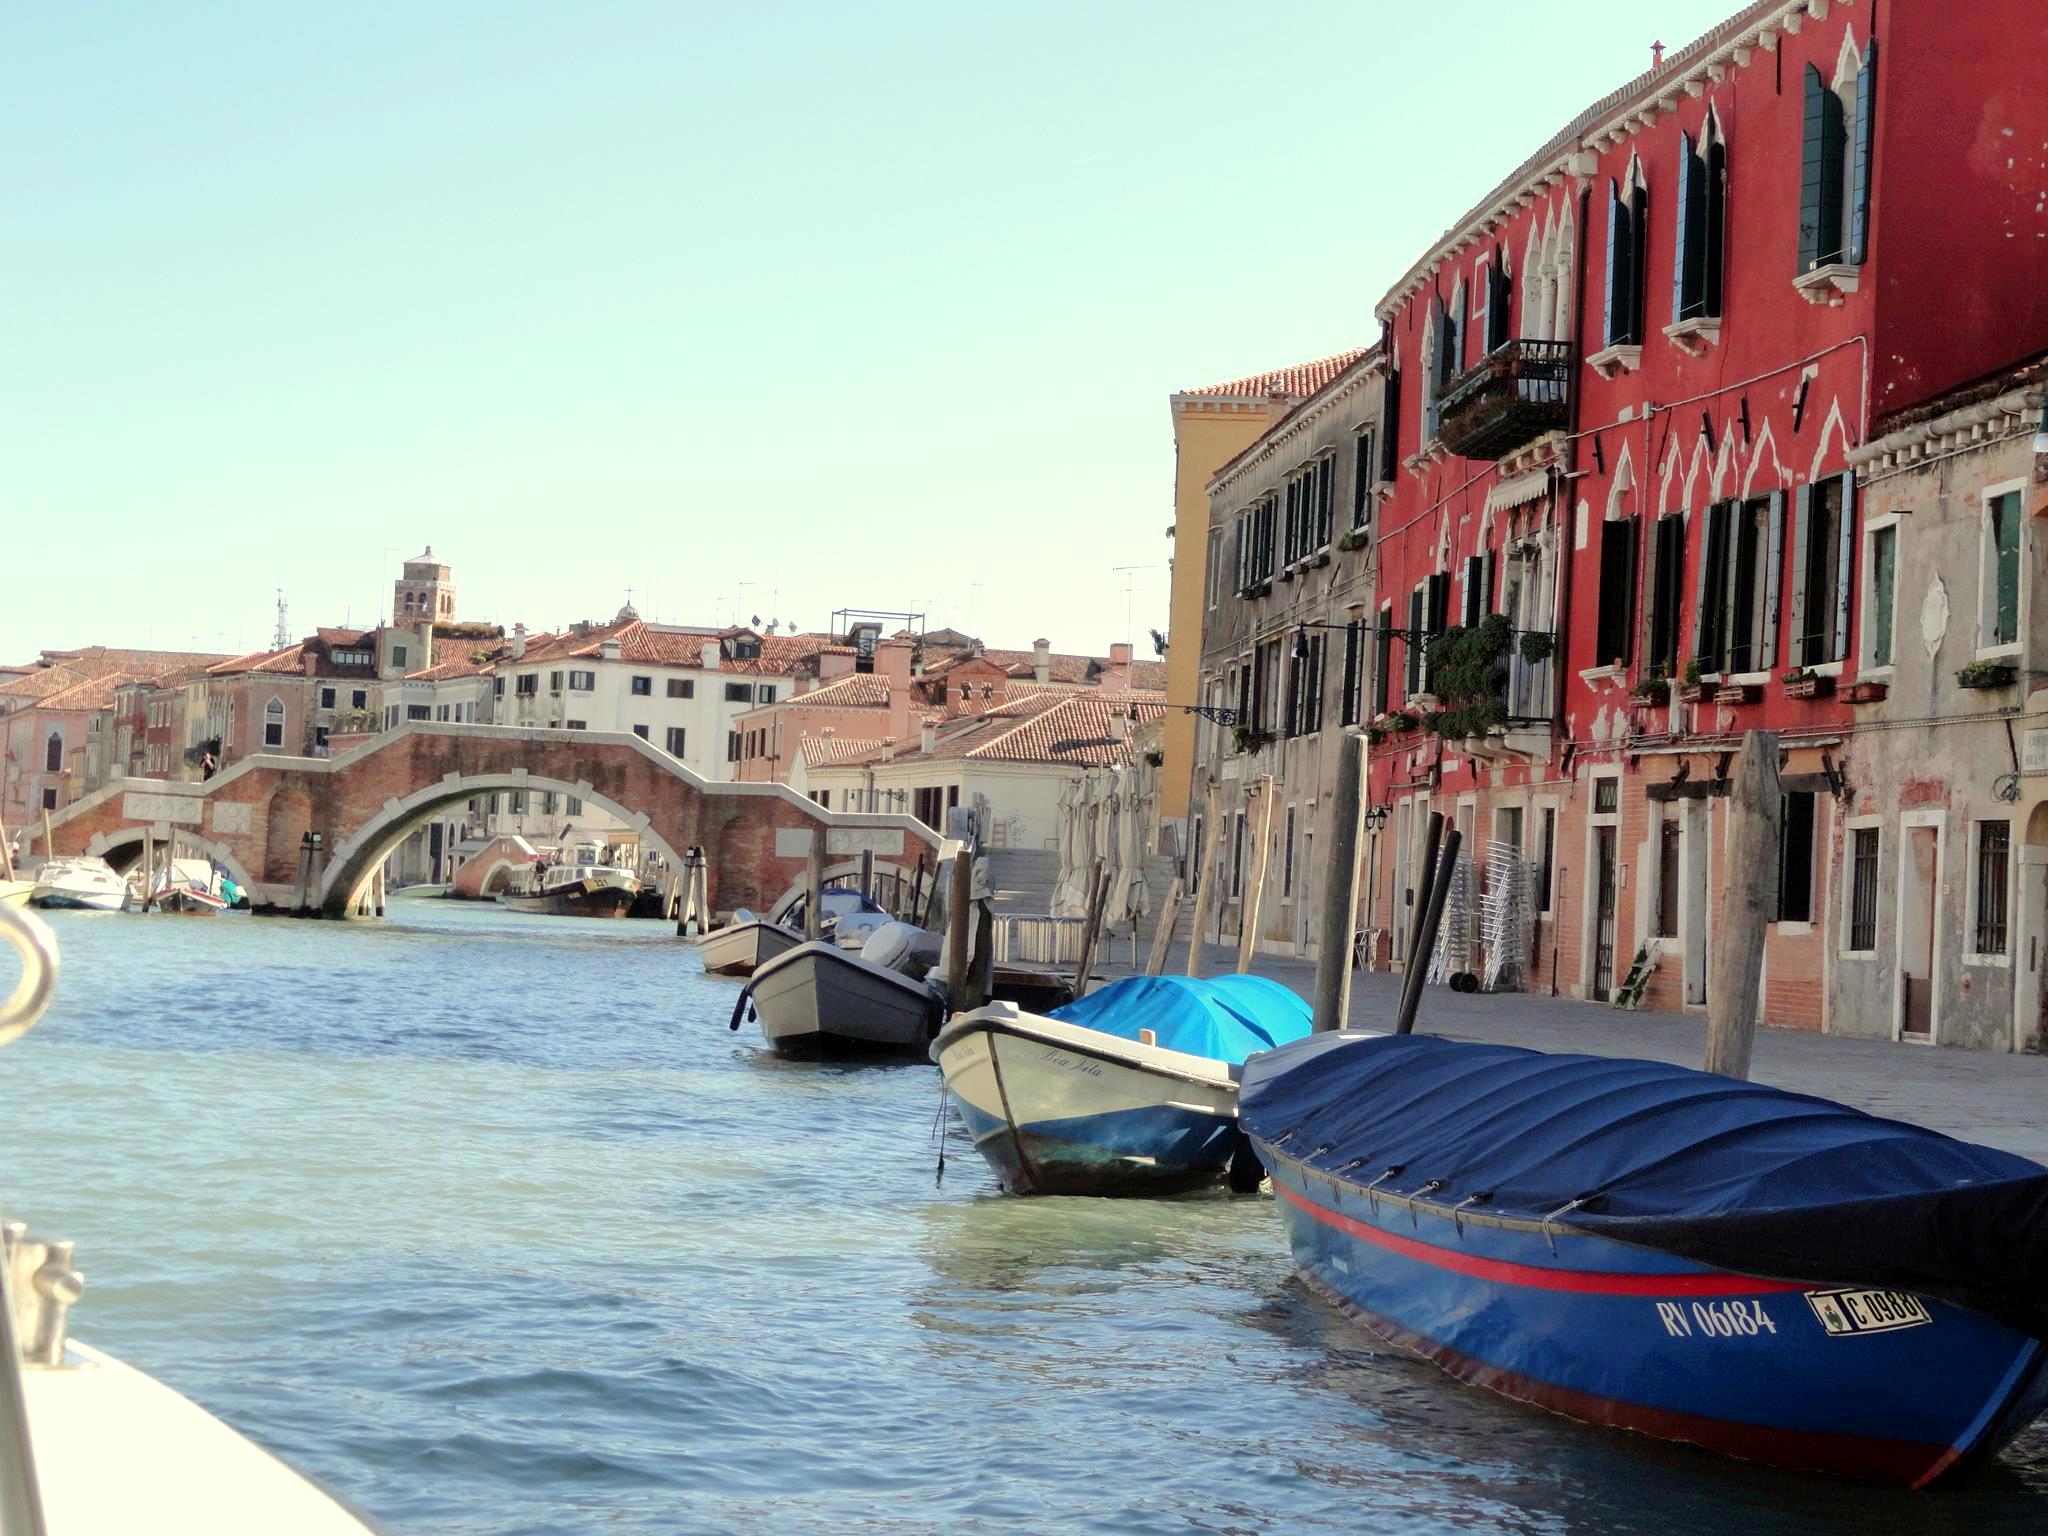 Venise: mon coup de coeur de l’Italie